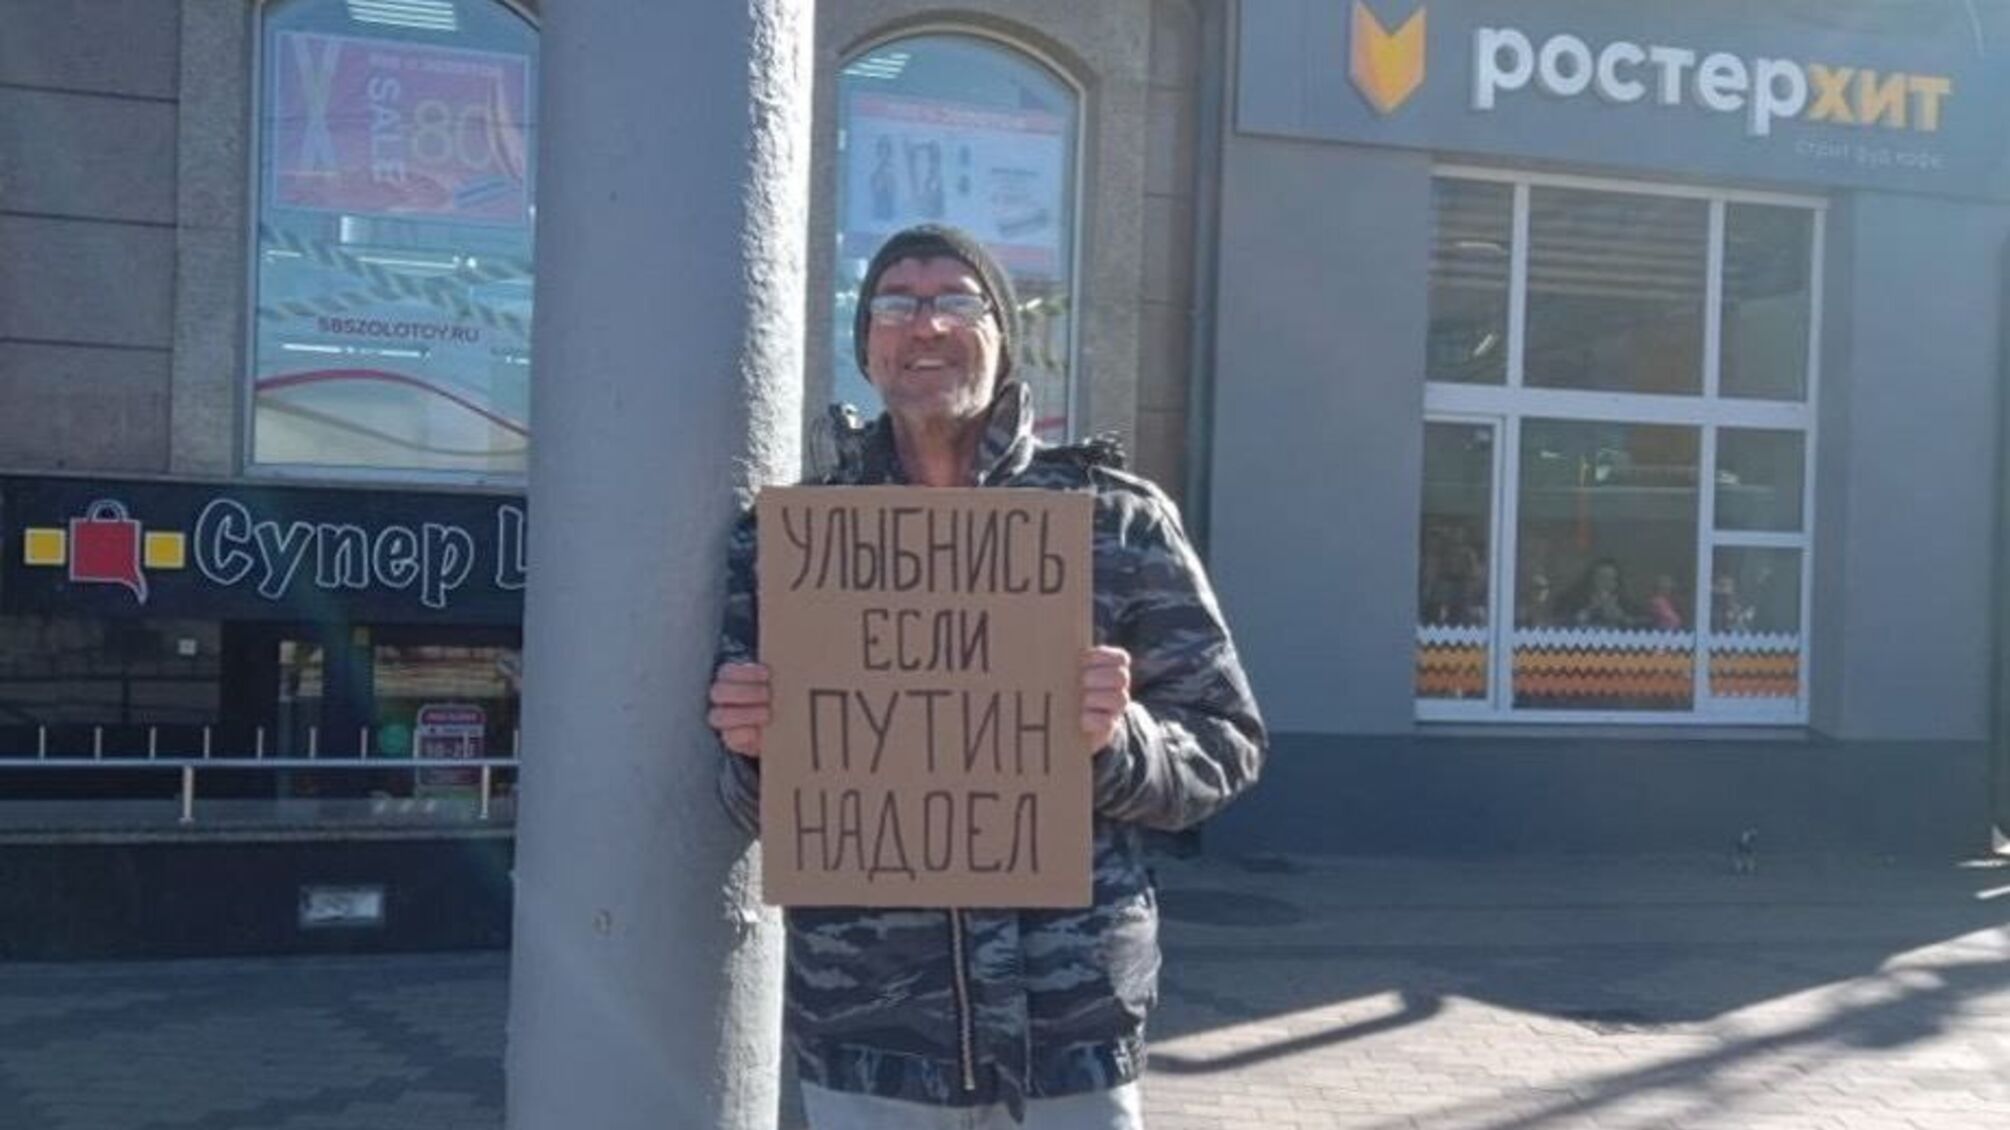 Калининградец получил год колонии за плакат с надписью 'Улыбнись, если путин надоел'